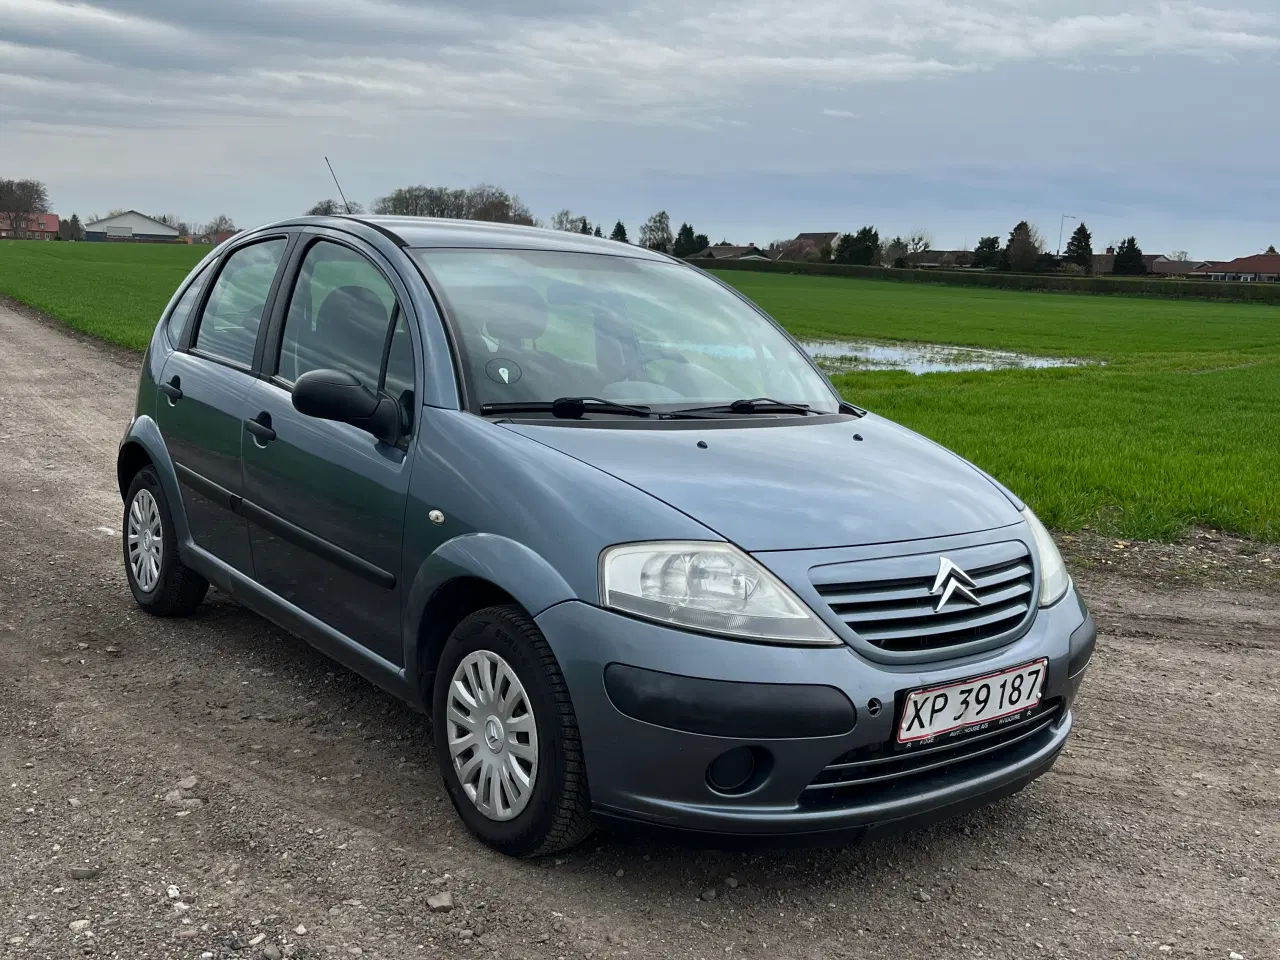 Billede 2 - Citroën c3 1.4 benzin